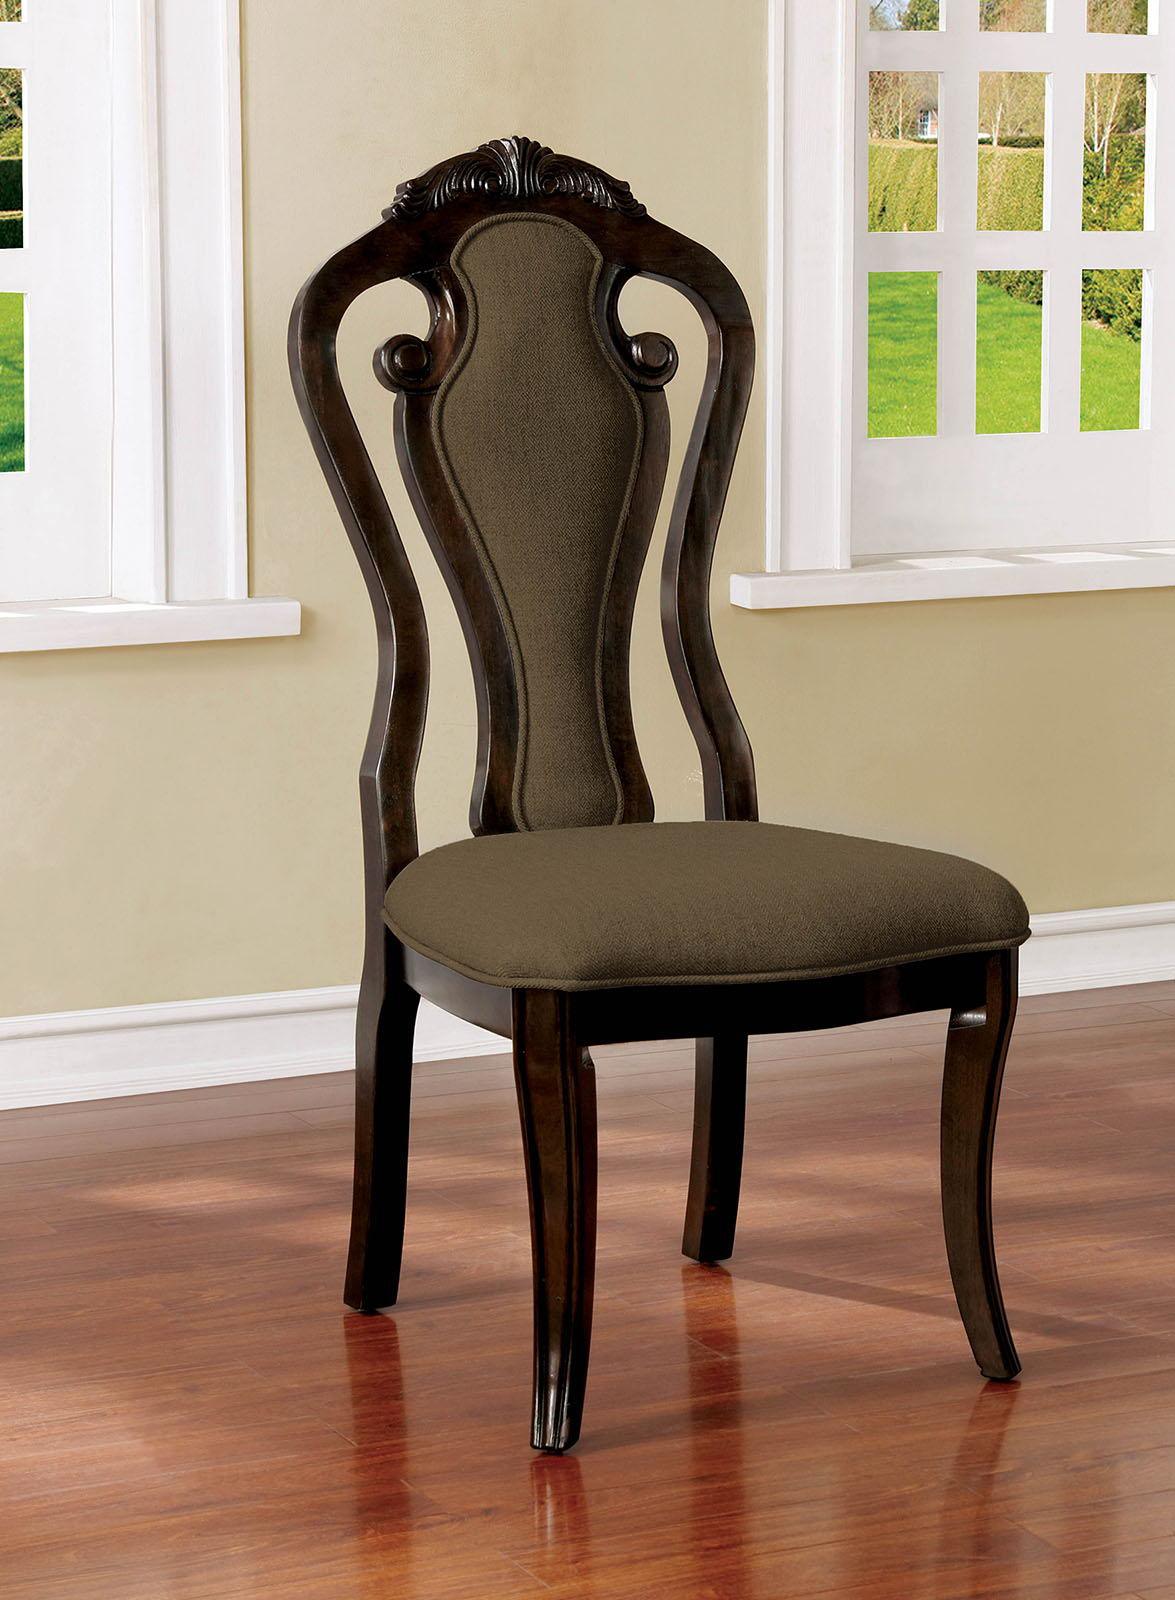 Furniture of America - Rosalina - Side Chair (Set of 2) - Walnut / Beige - 5th Avenue Furniture